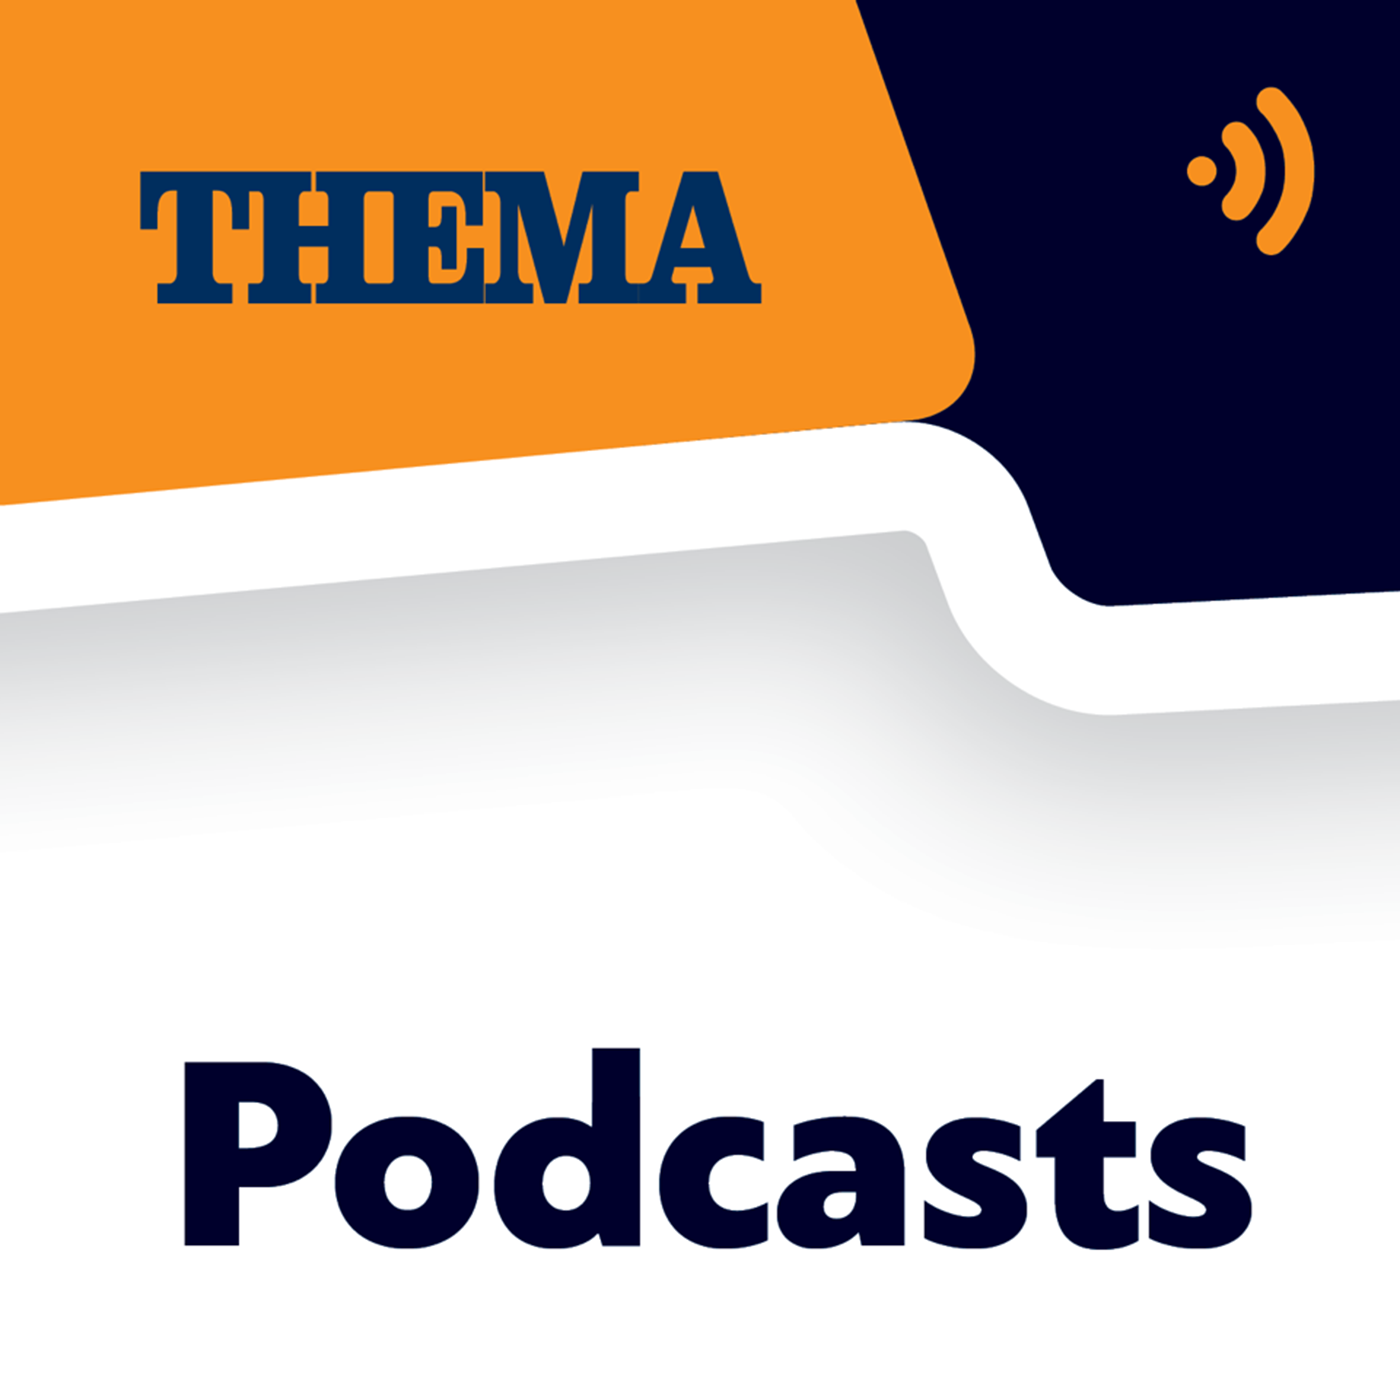 Γιάννης Ρέτσος στο podcast του ΘΕΜΑ 104,6: Σκοτεινοί οι μήνες που έρχονται για τον τουρισμό – Σταδιακή ανάκαμψη από το δεύτερο εξάμηνο του ‘21